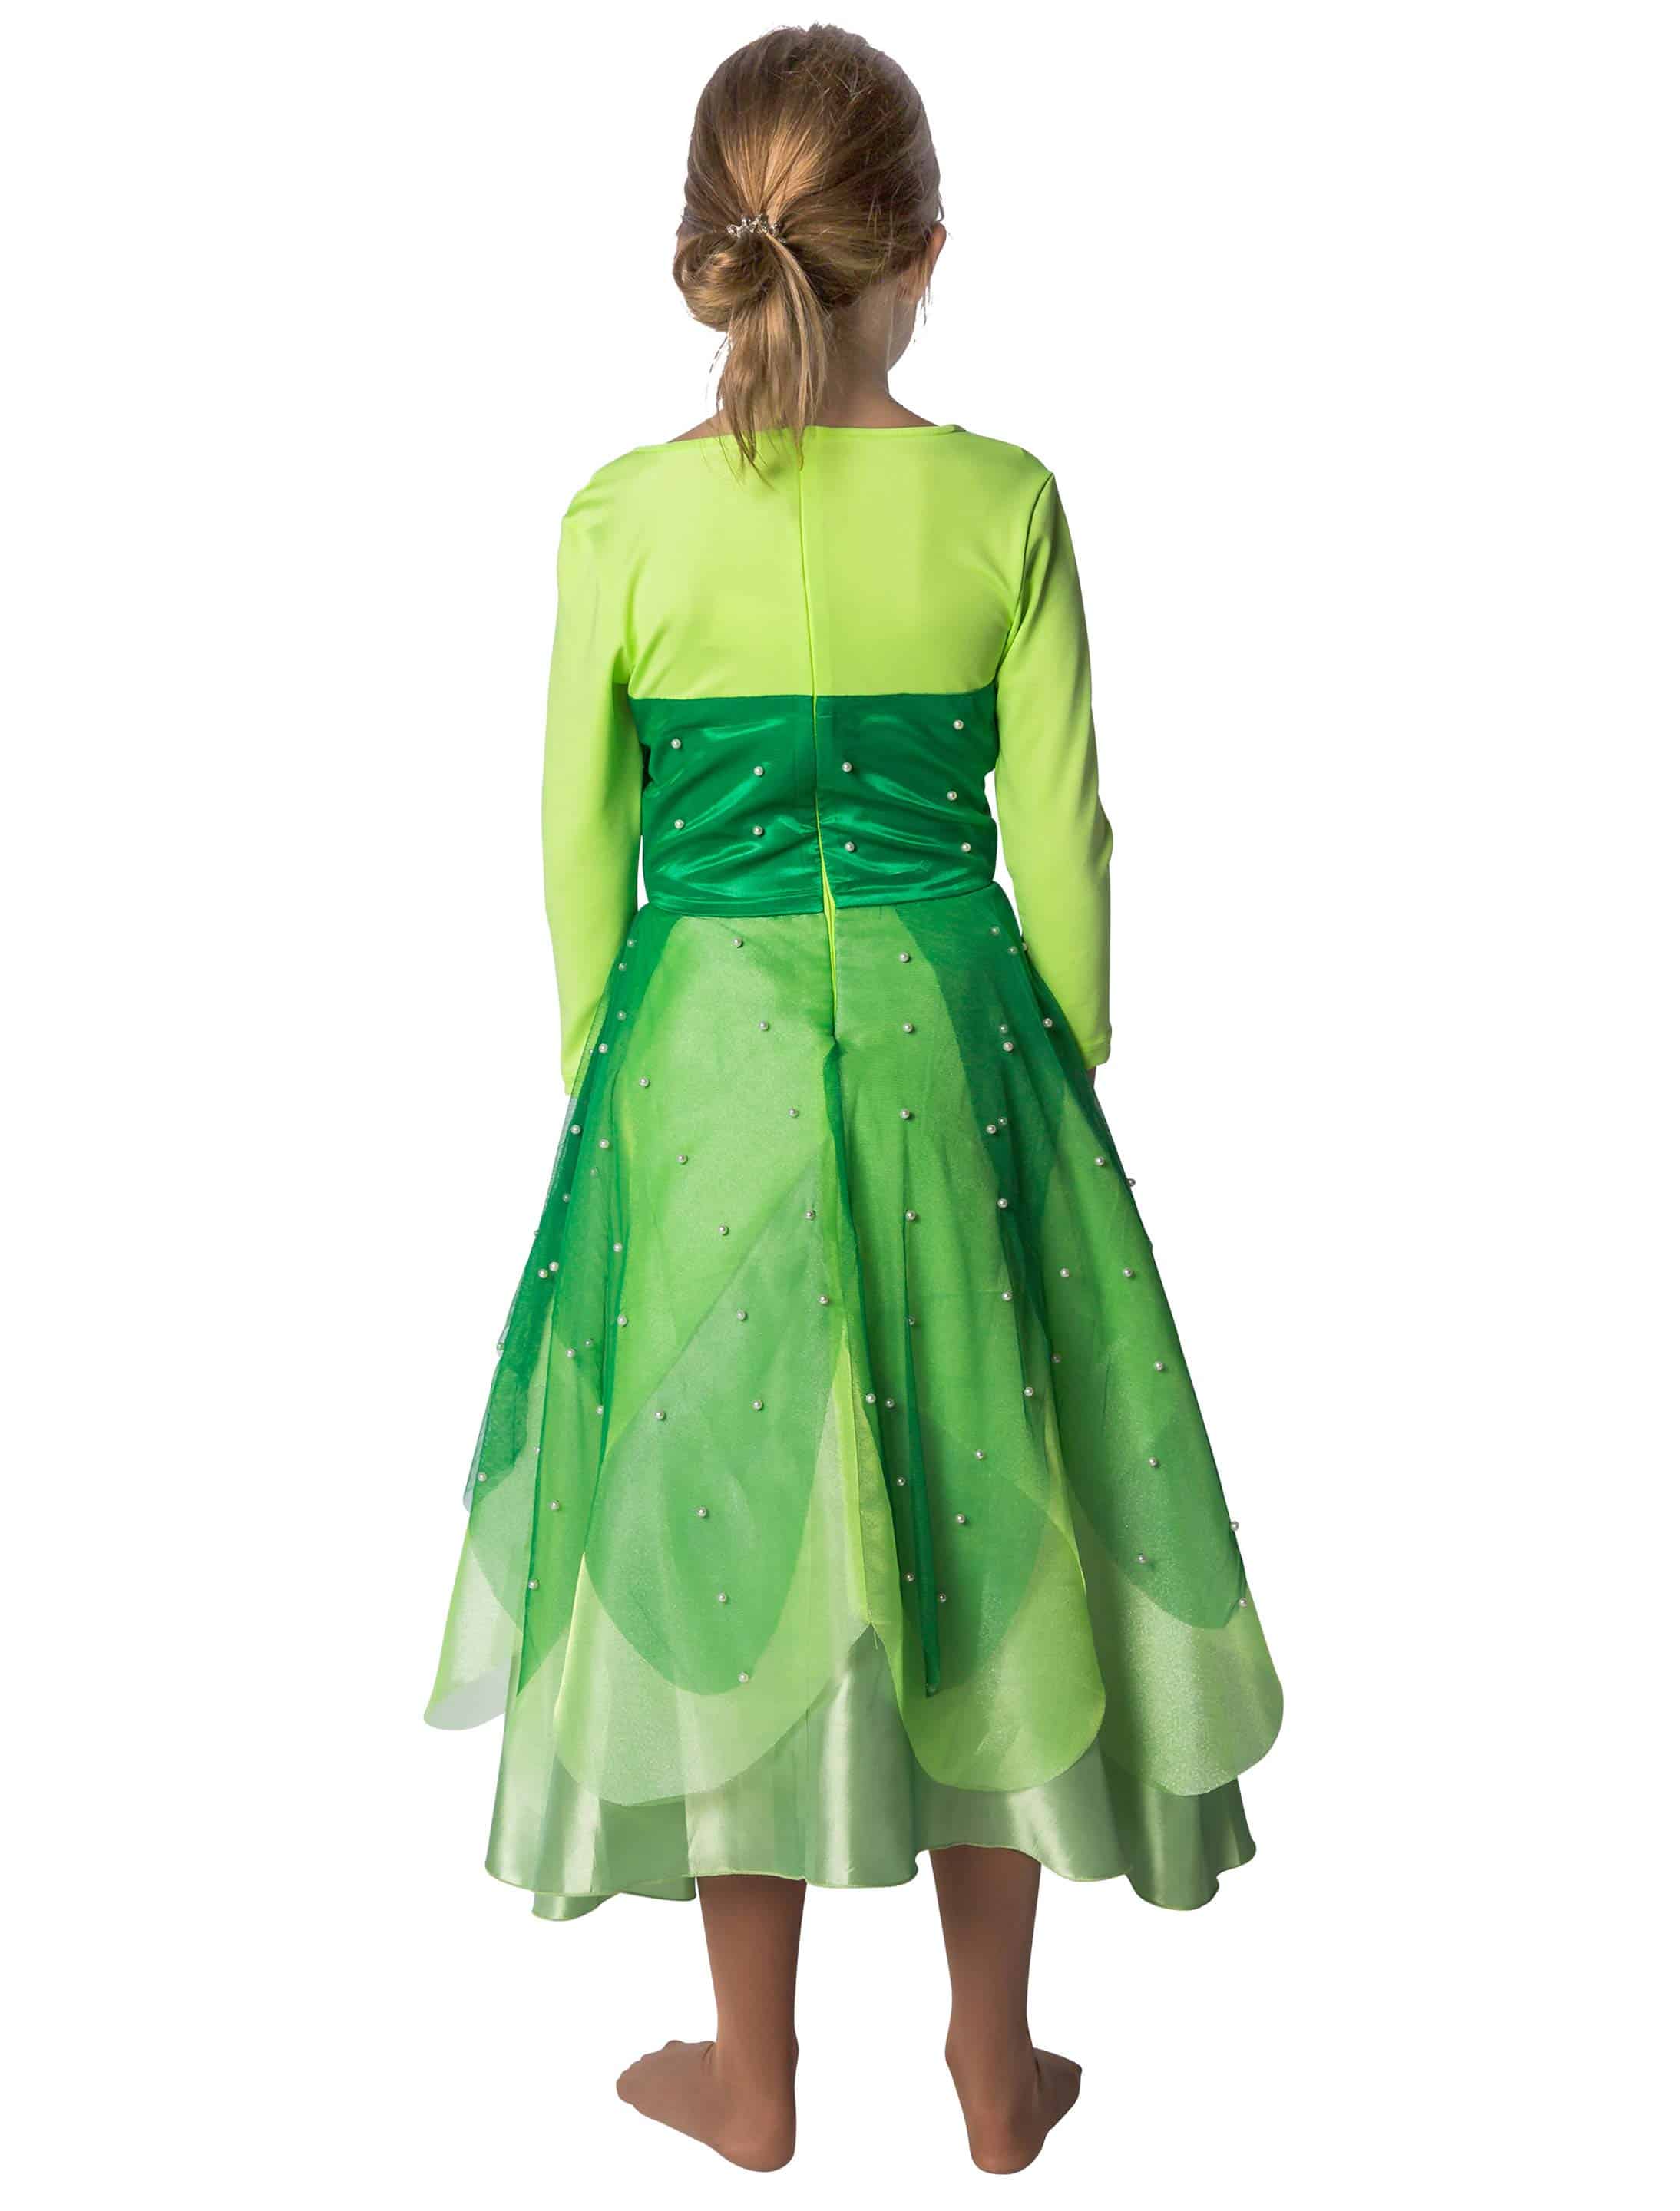 Kleid Froschkönigin Kinder grün 152